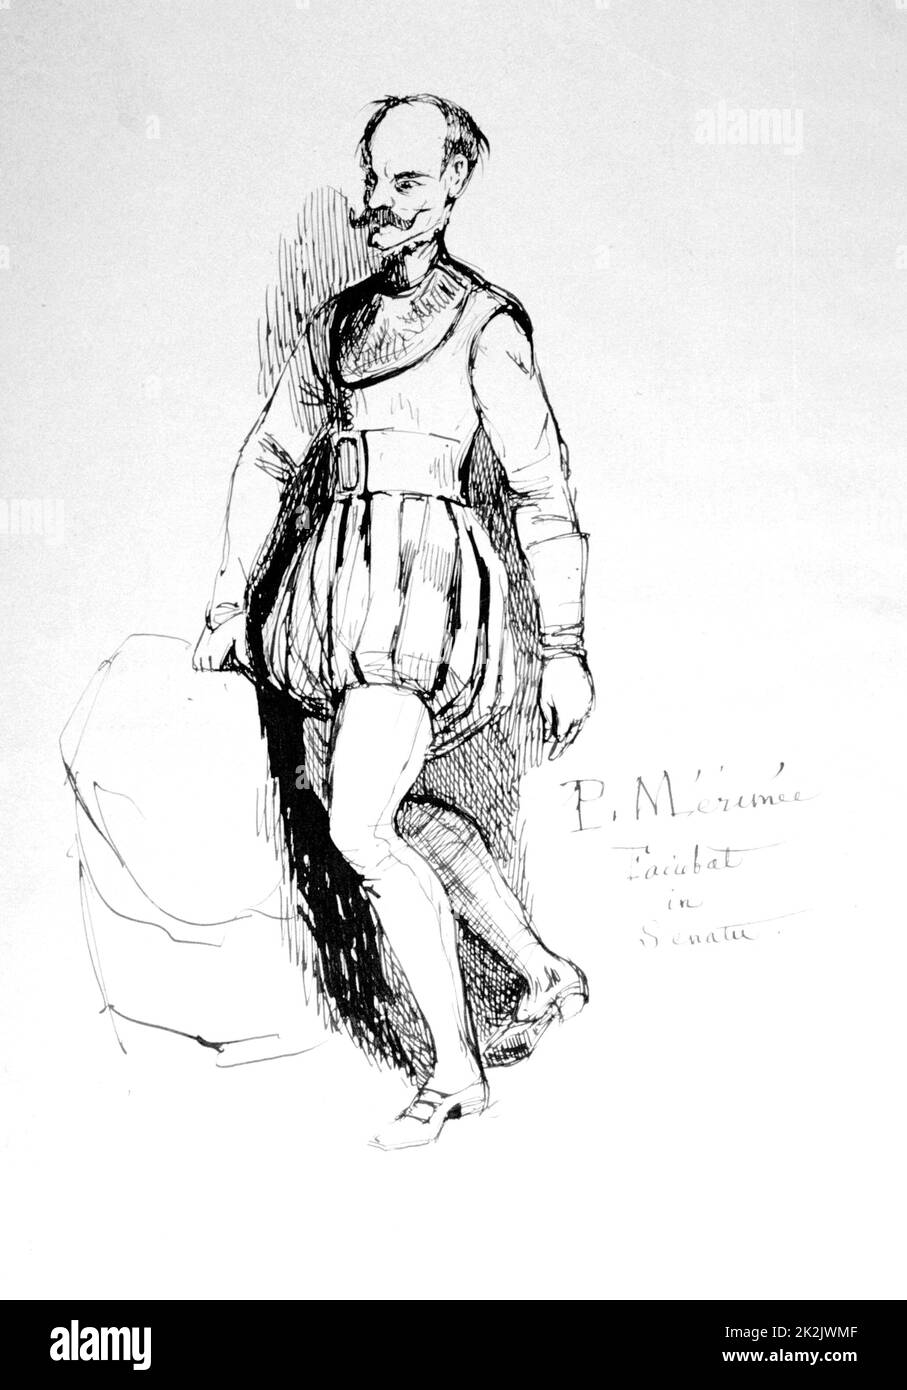 Figura in costume del 16th ° secolo, 1803-1870. Prosper Merimee è stato un drammaturgo, storico, archeologo e scrittore di storia, collezione privata francese. Foto Stock